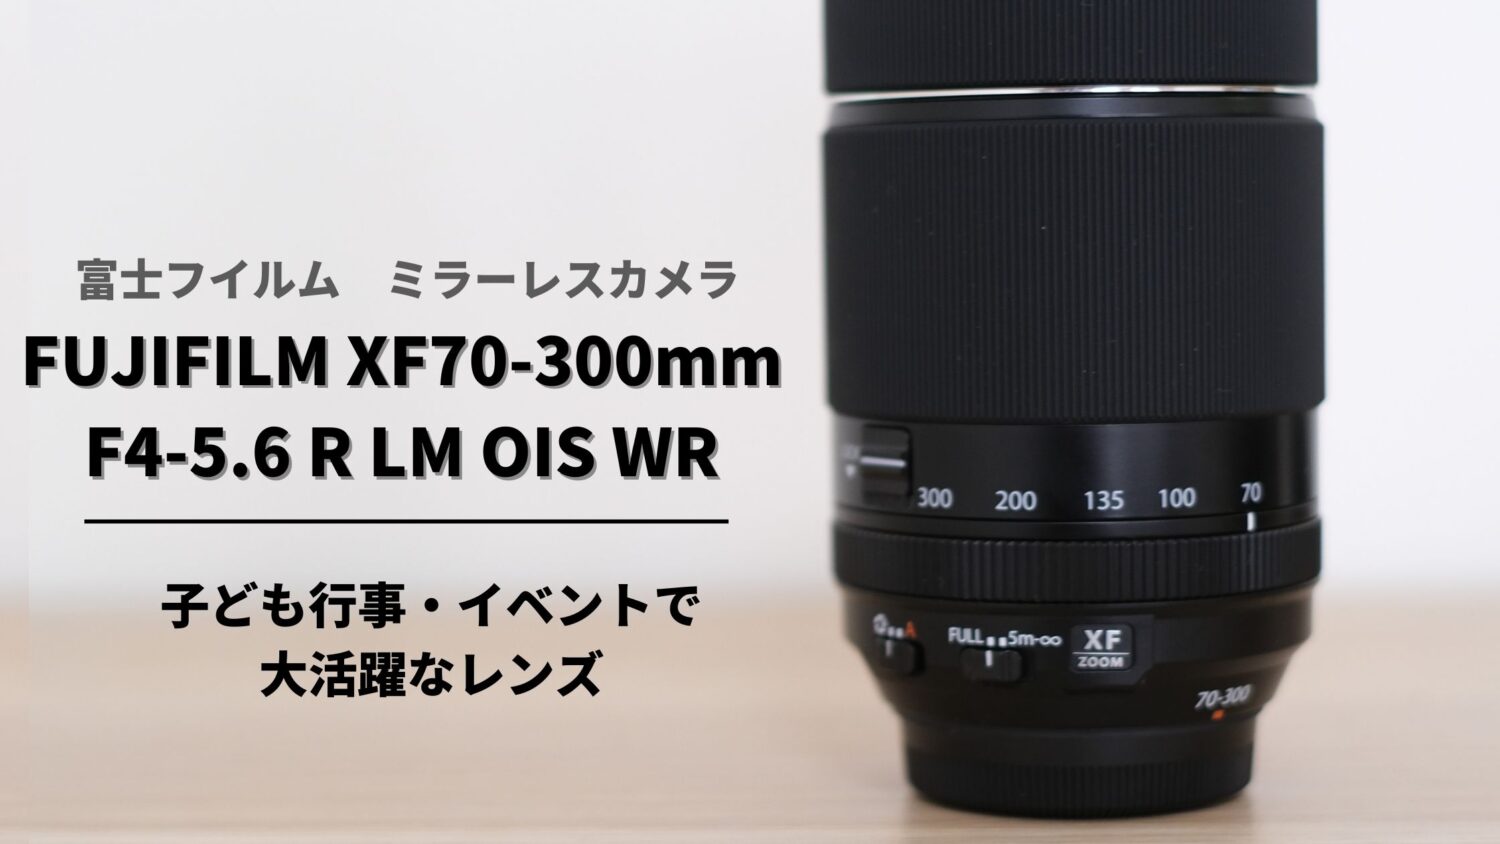 【購入レビュー】FUJIFILM XF70-300mmF4-5.6 R LM OIS WR|作例紹介つき